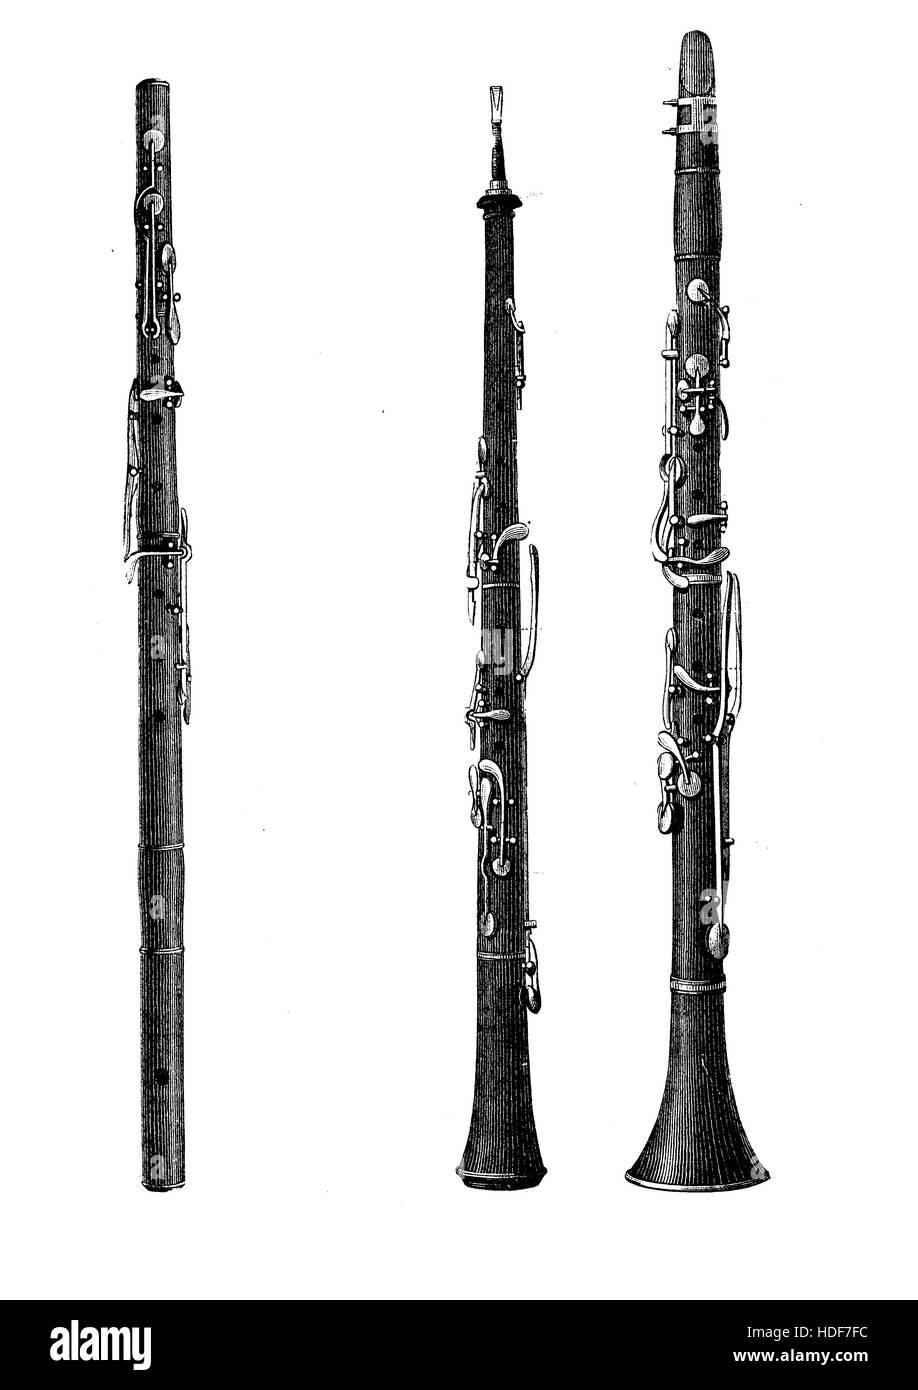 Les instruments à vent, hautbois, clarinette et flûte, XIX siècle gravure vintage Banque D'Images